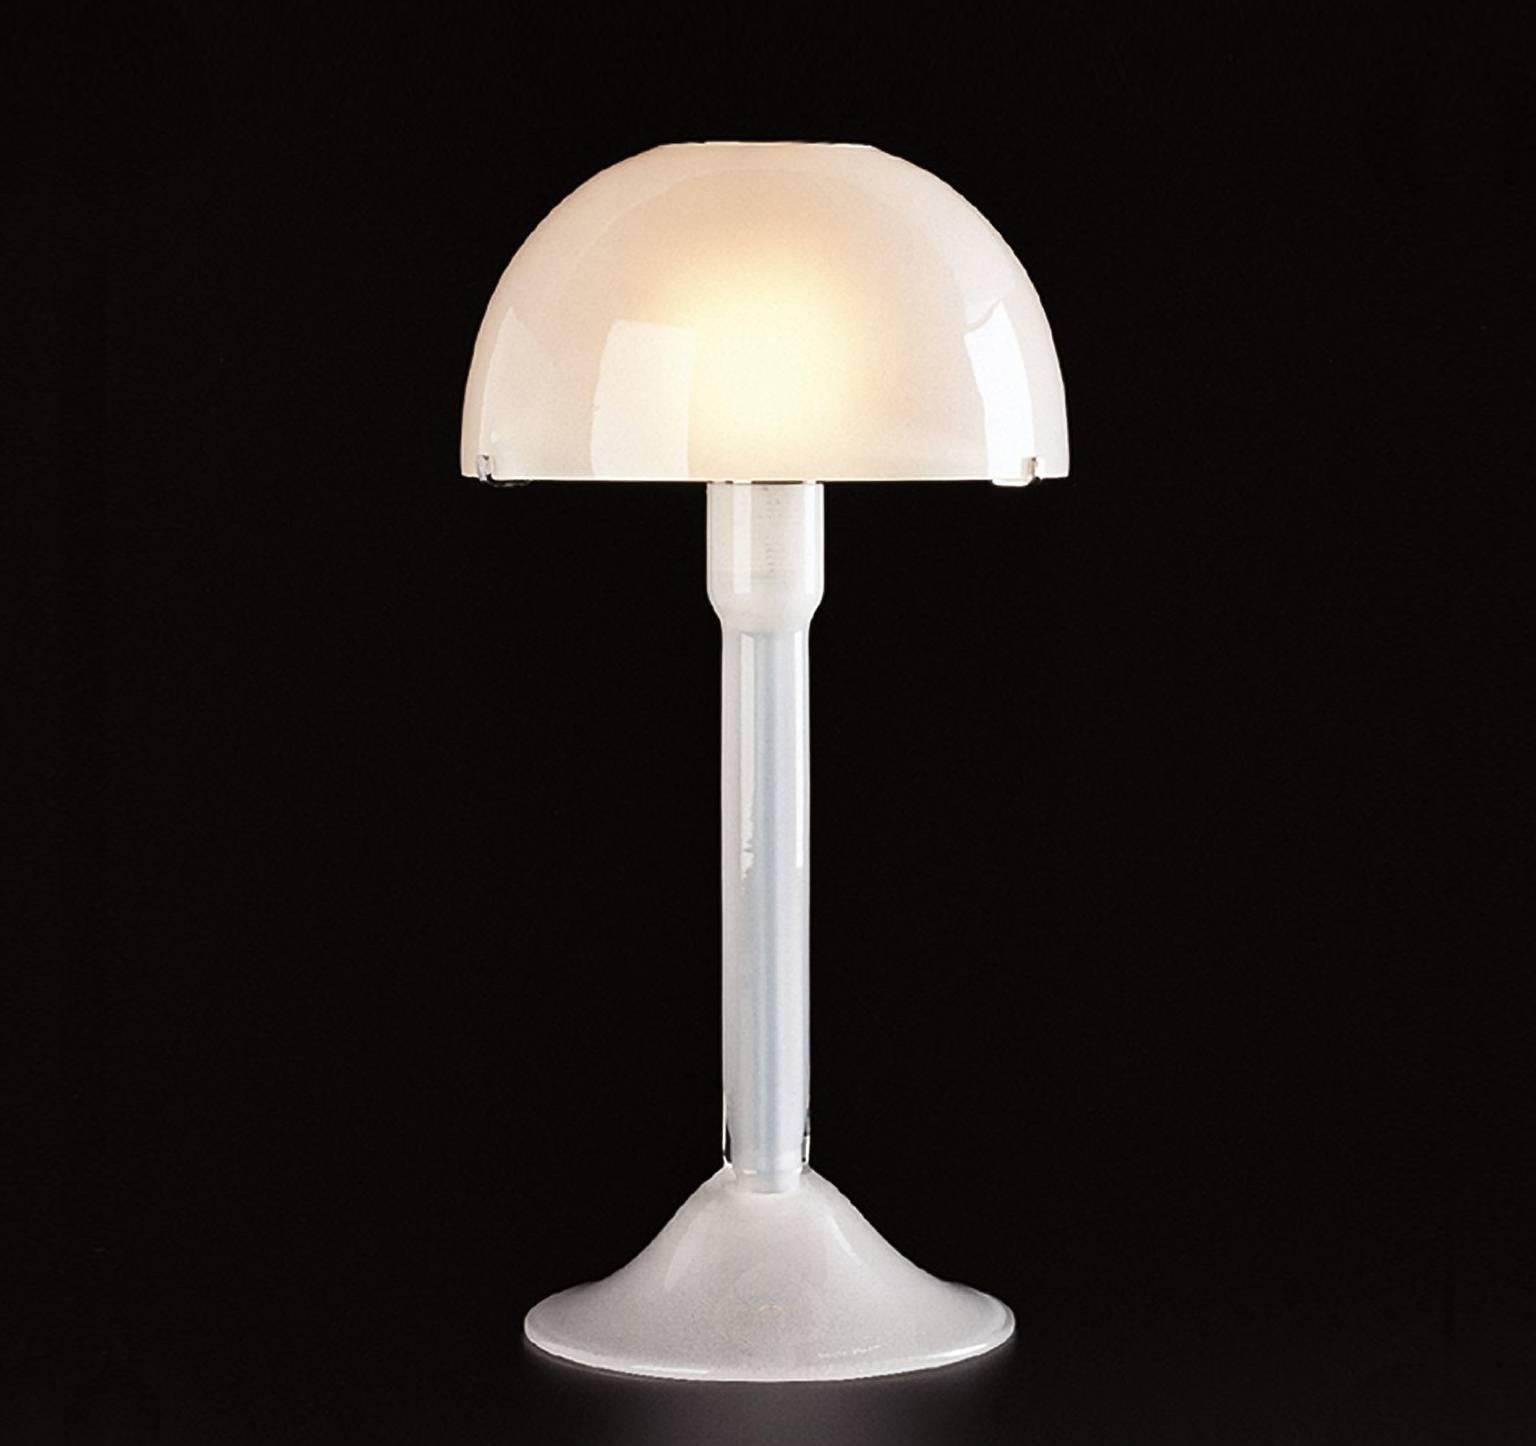 Lampe de table en verre de Murano soufflé à la bouche, blanc laiteux, conçue en 1992 par Carlo Moretti. 

ampoule à incandescence de 60 watts, douille ecolamp de 42 watts E27.


Carlo Moretti : Une fabrique artisanale

En se promenant à pied